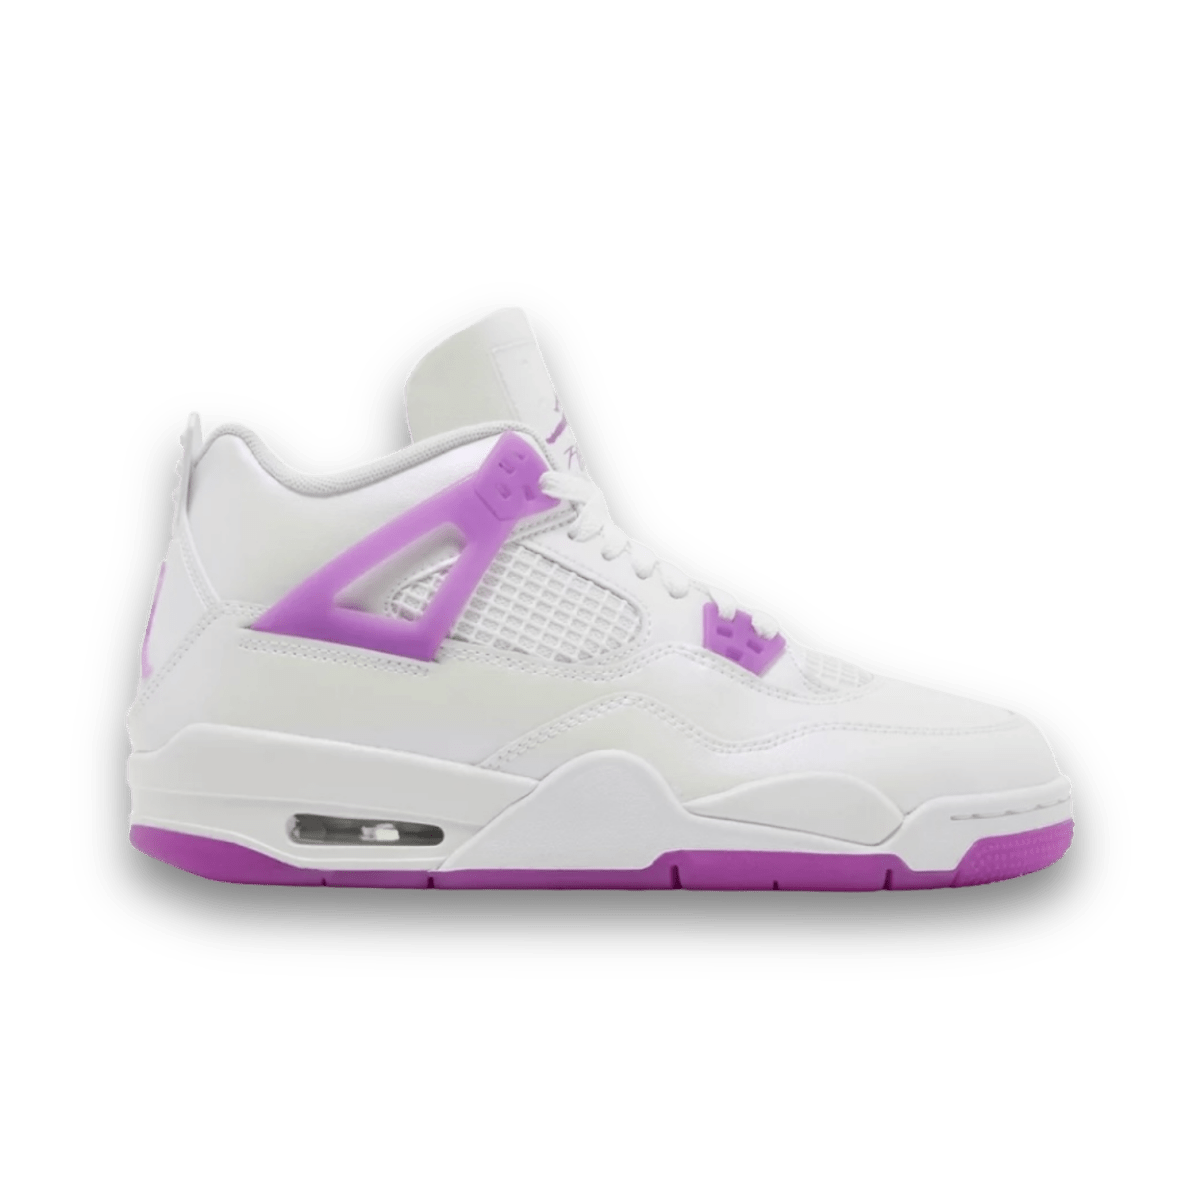 Air Jordan 4 Retro 'Hyper Violet' - Grade School - Unreleased - Mid Sneaker - Jawns on Fire Sneakers & Streetwear